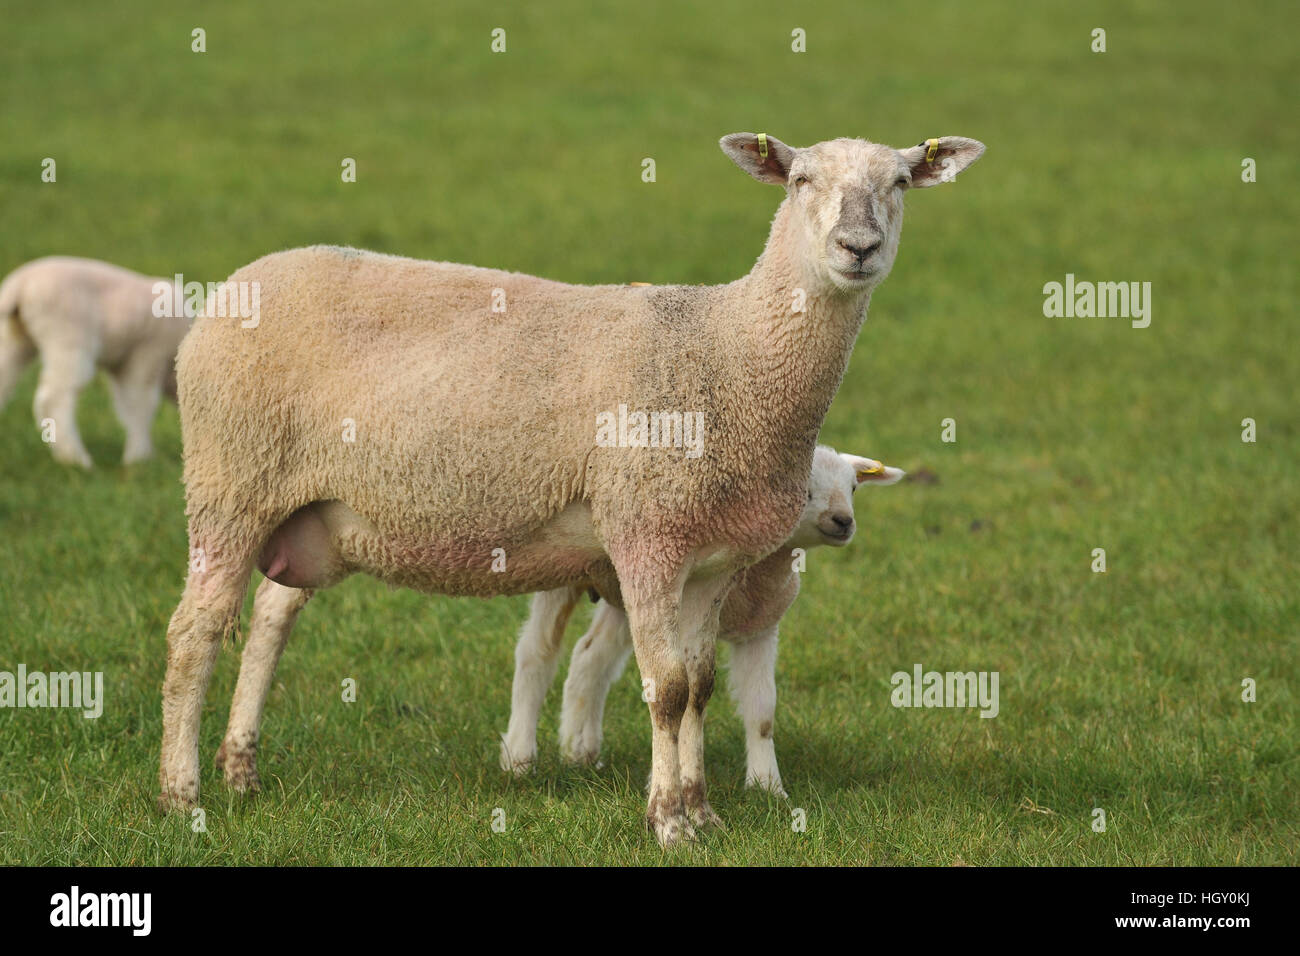 ewe with lambs Stock Photo